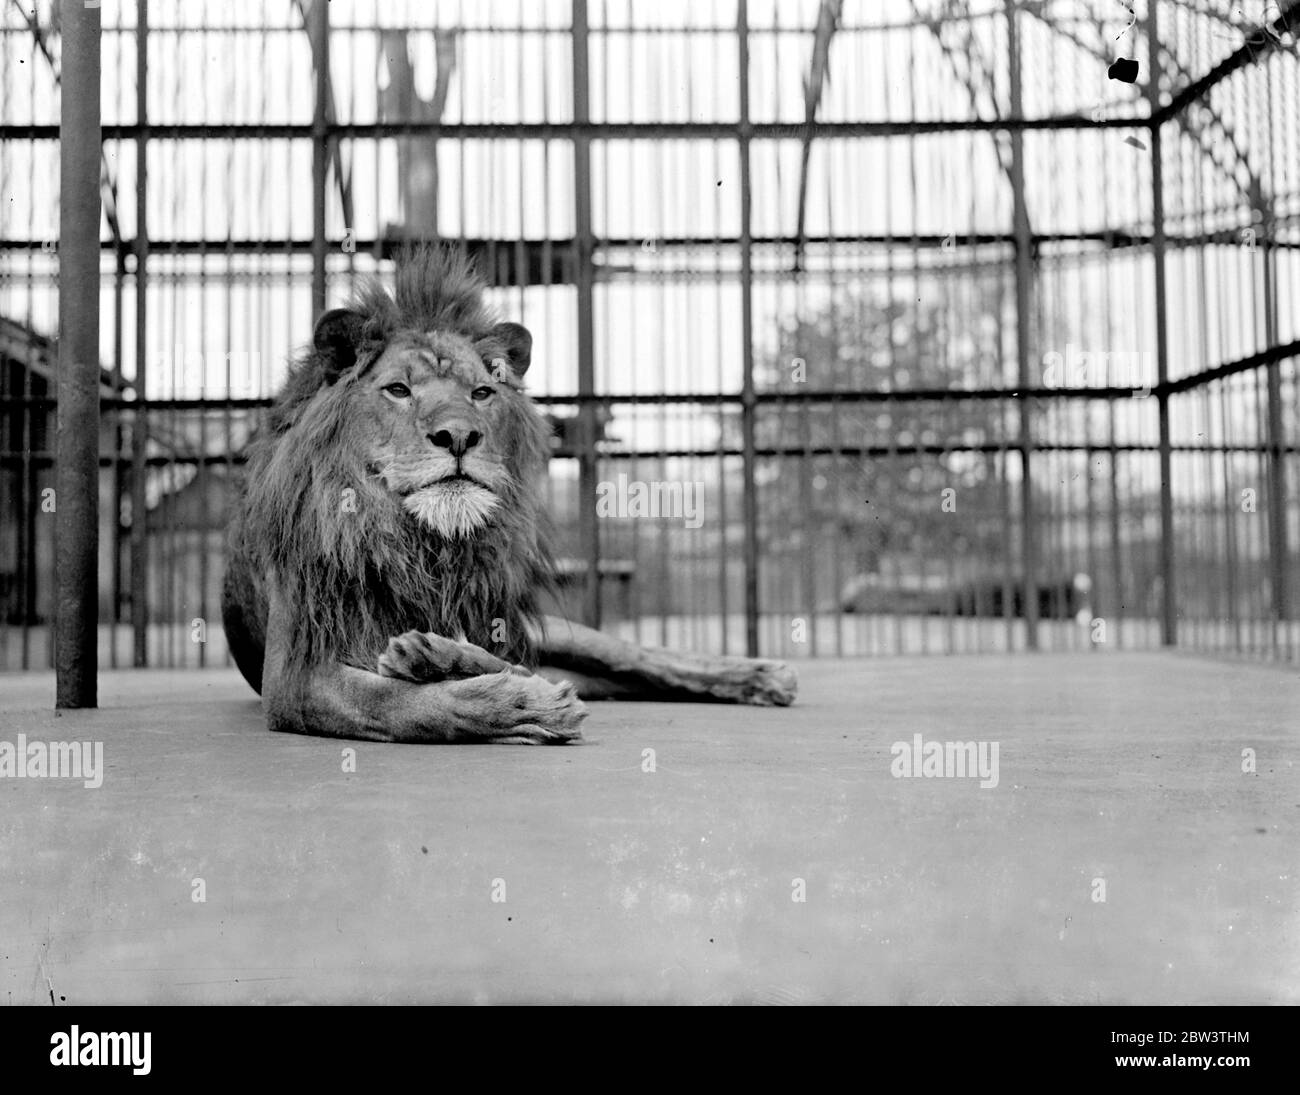 La paternité est un alésage , pense Jock . Jock , le fier père des deux nouveaux oursons de lion au zoo de Londres , se rend lazly présentable avant d'aller voir sa progéniture . 11 mai 1936 Banque D'Images